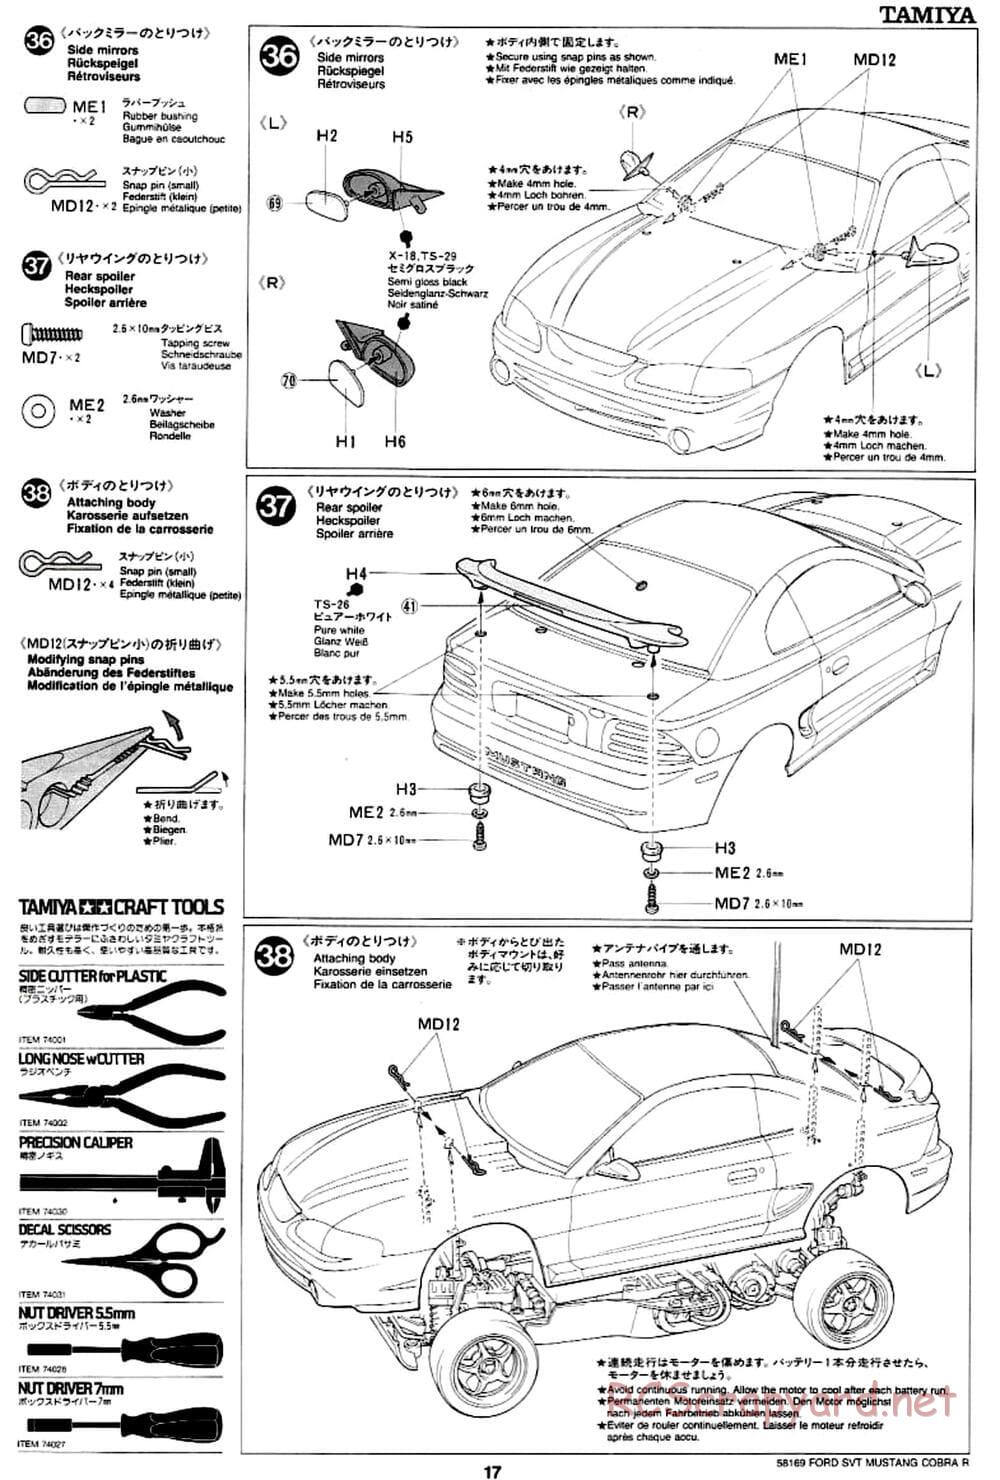 Tamiya - Ford SVT Mustang Cobra-R - TA-02 Chassis - Manual - Page 19